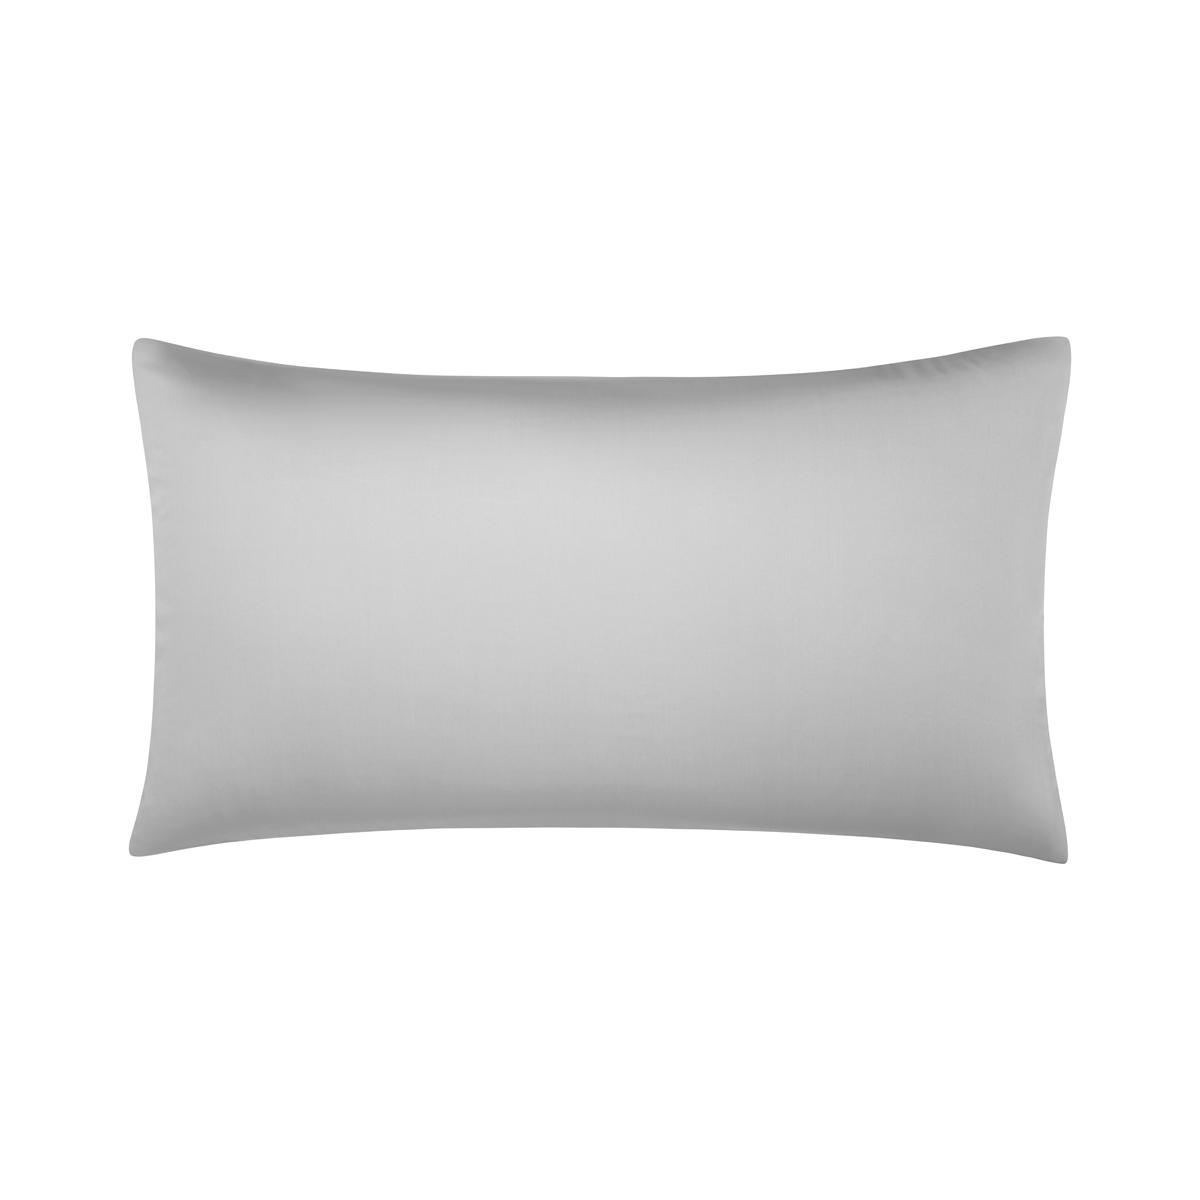 Комплект наволочек Togas Эдем серый/белый 50х90, 2пр комплект полотенец togas аннами серый белый 2пр